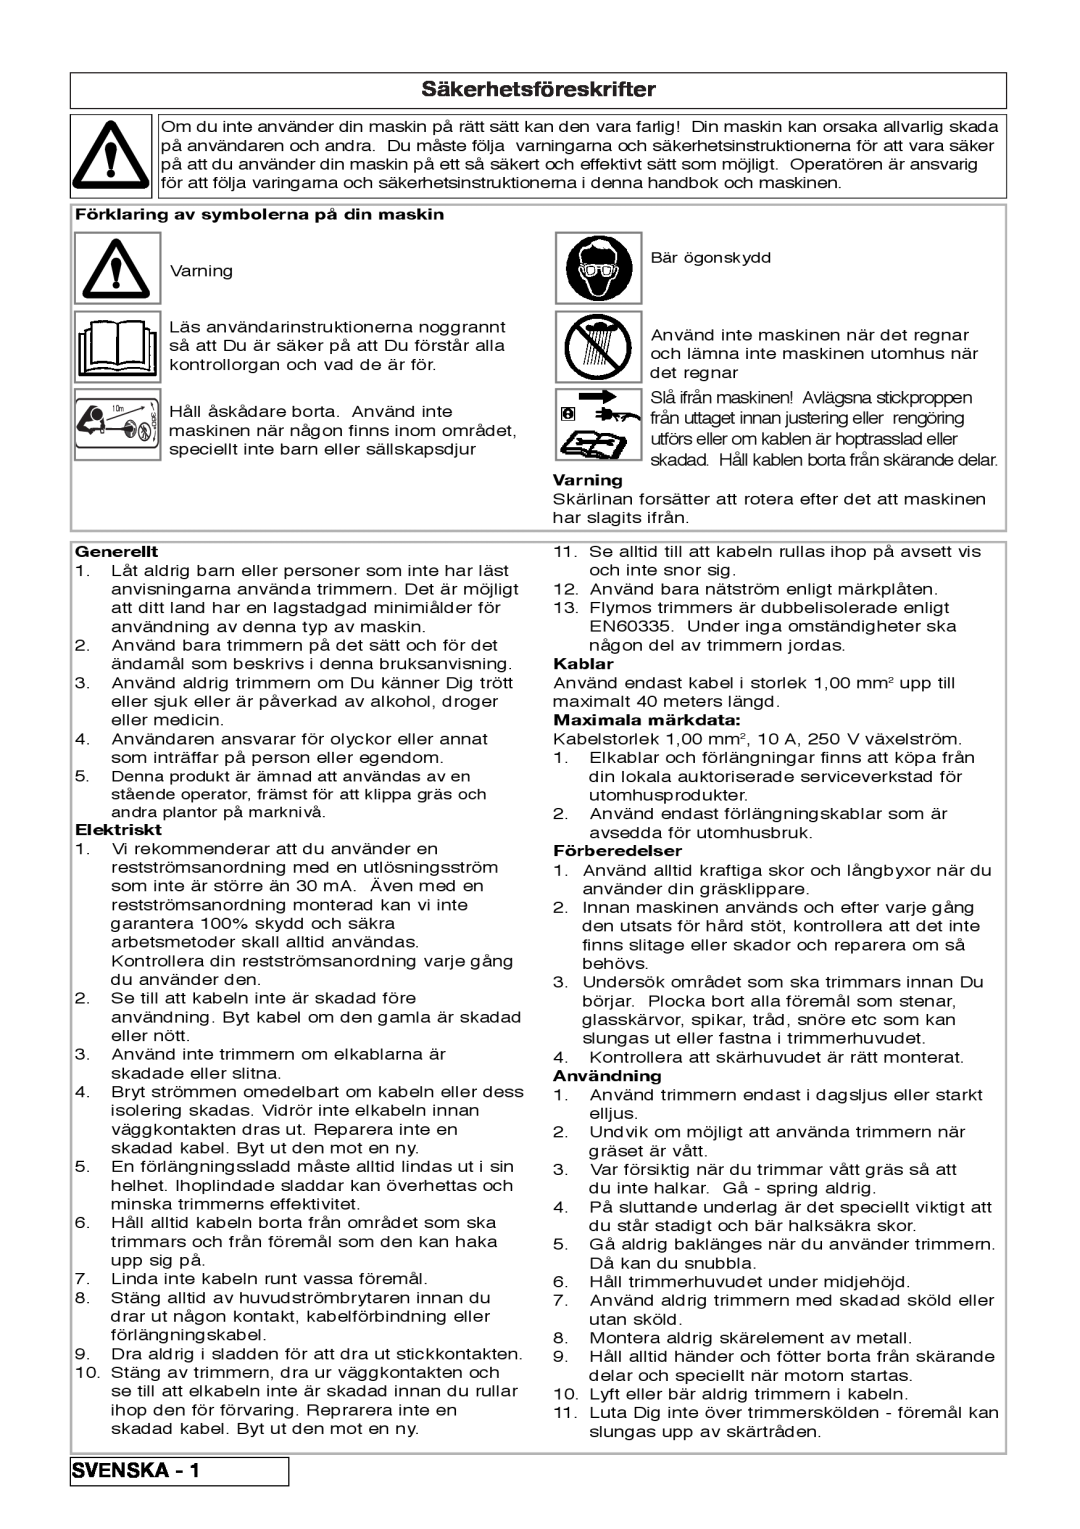 Flymo 800/1000 manual Säkerhetsföreskrifter, Svenska, Förklaring av symbolerna på din maskin, Varning, Generellt, Kablar 